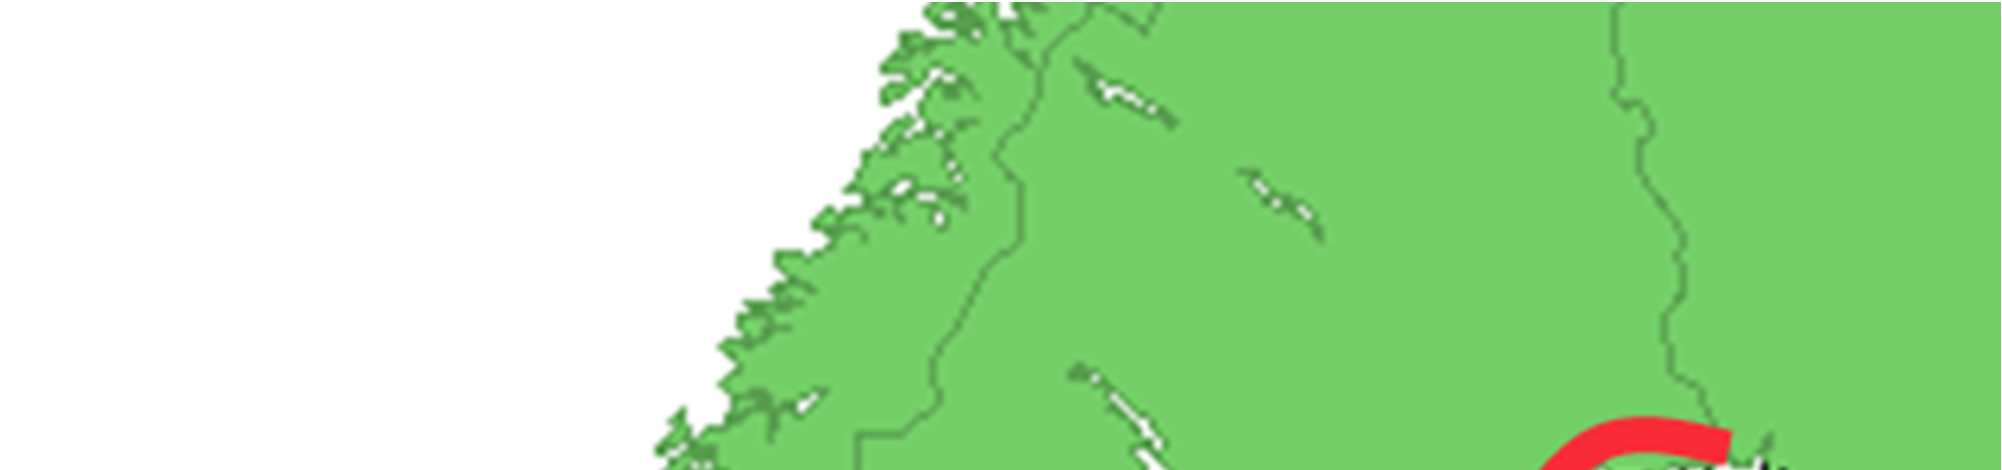 vattenstånd, och en vind (röd pil) som skapar höga vattenstånd i södra Kalmar.